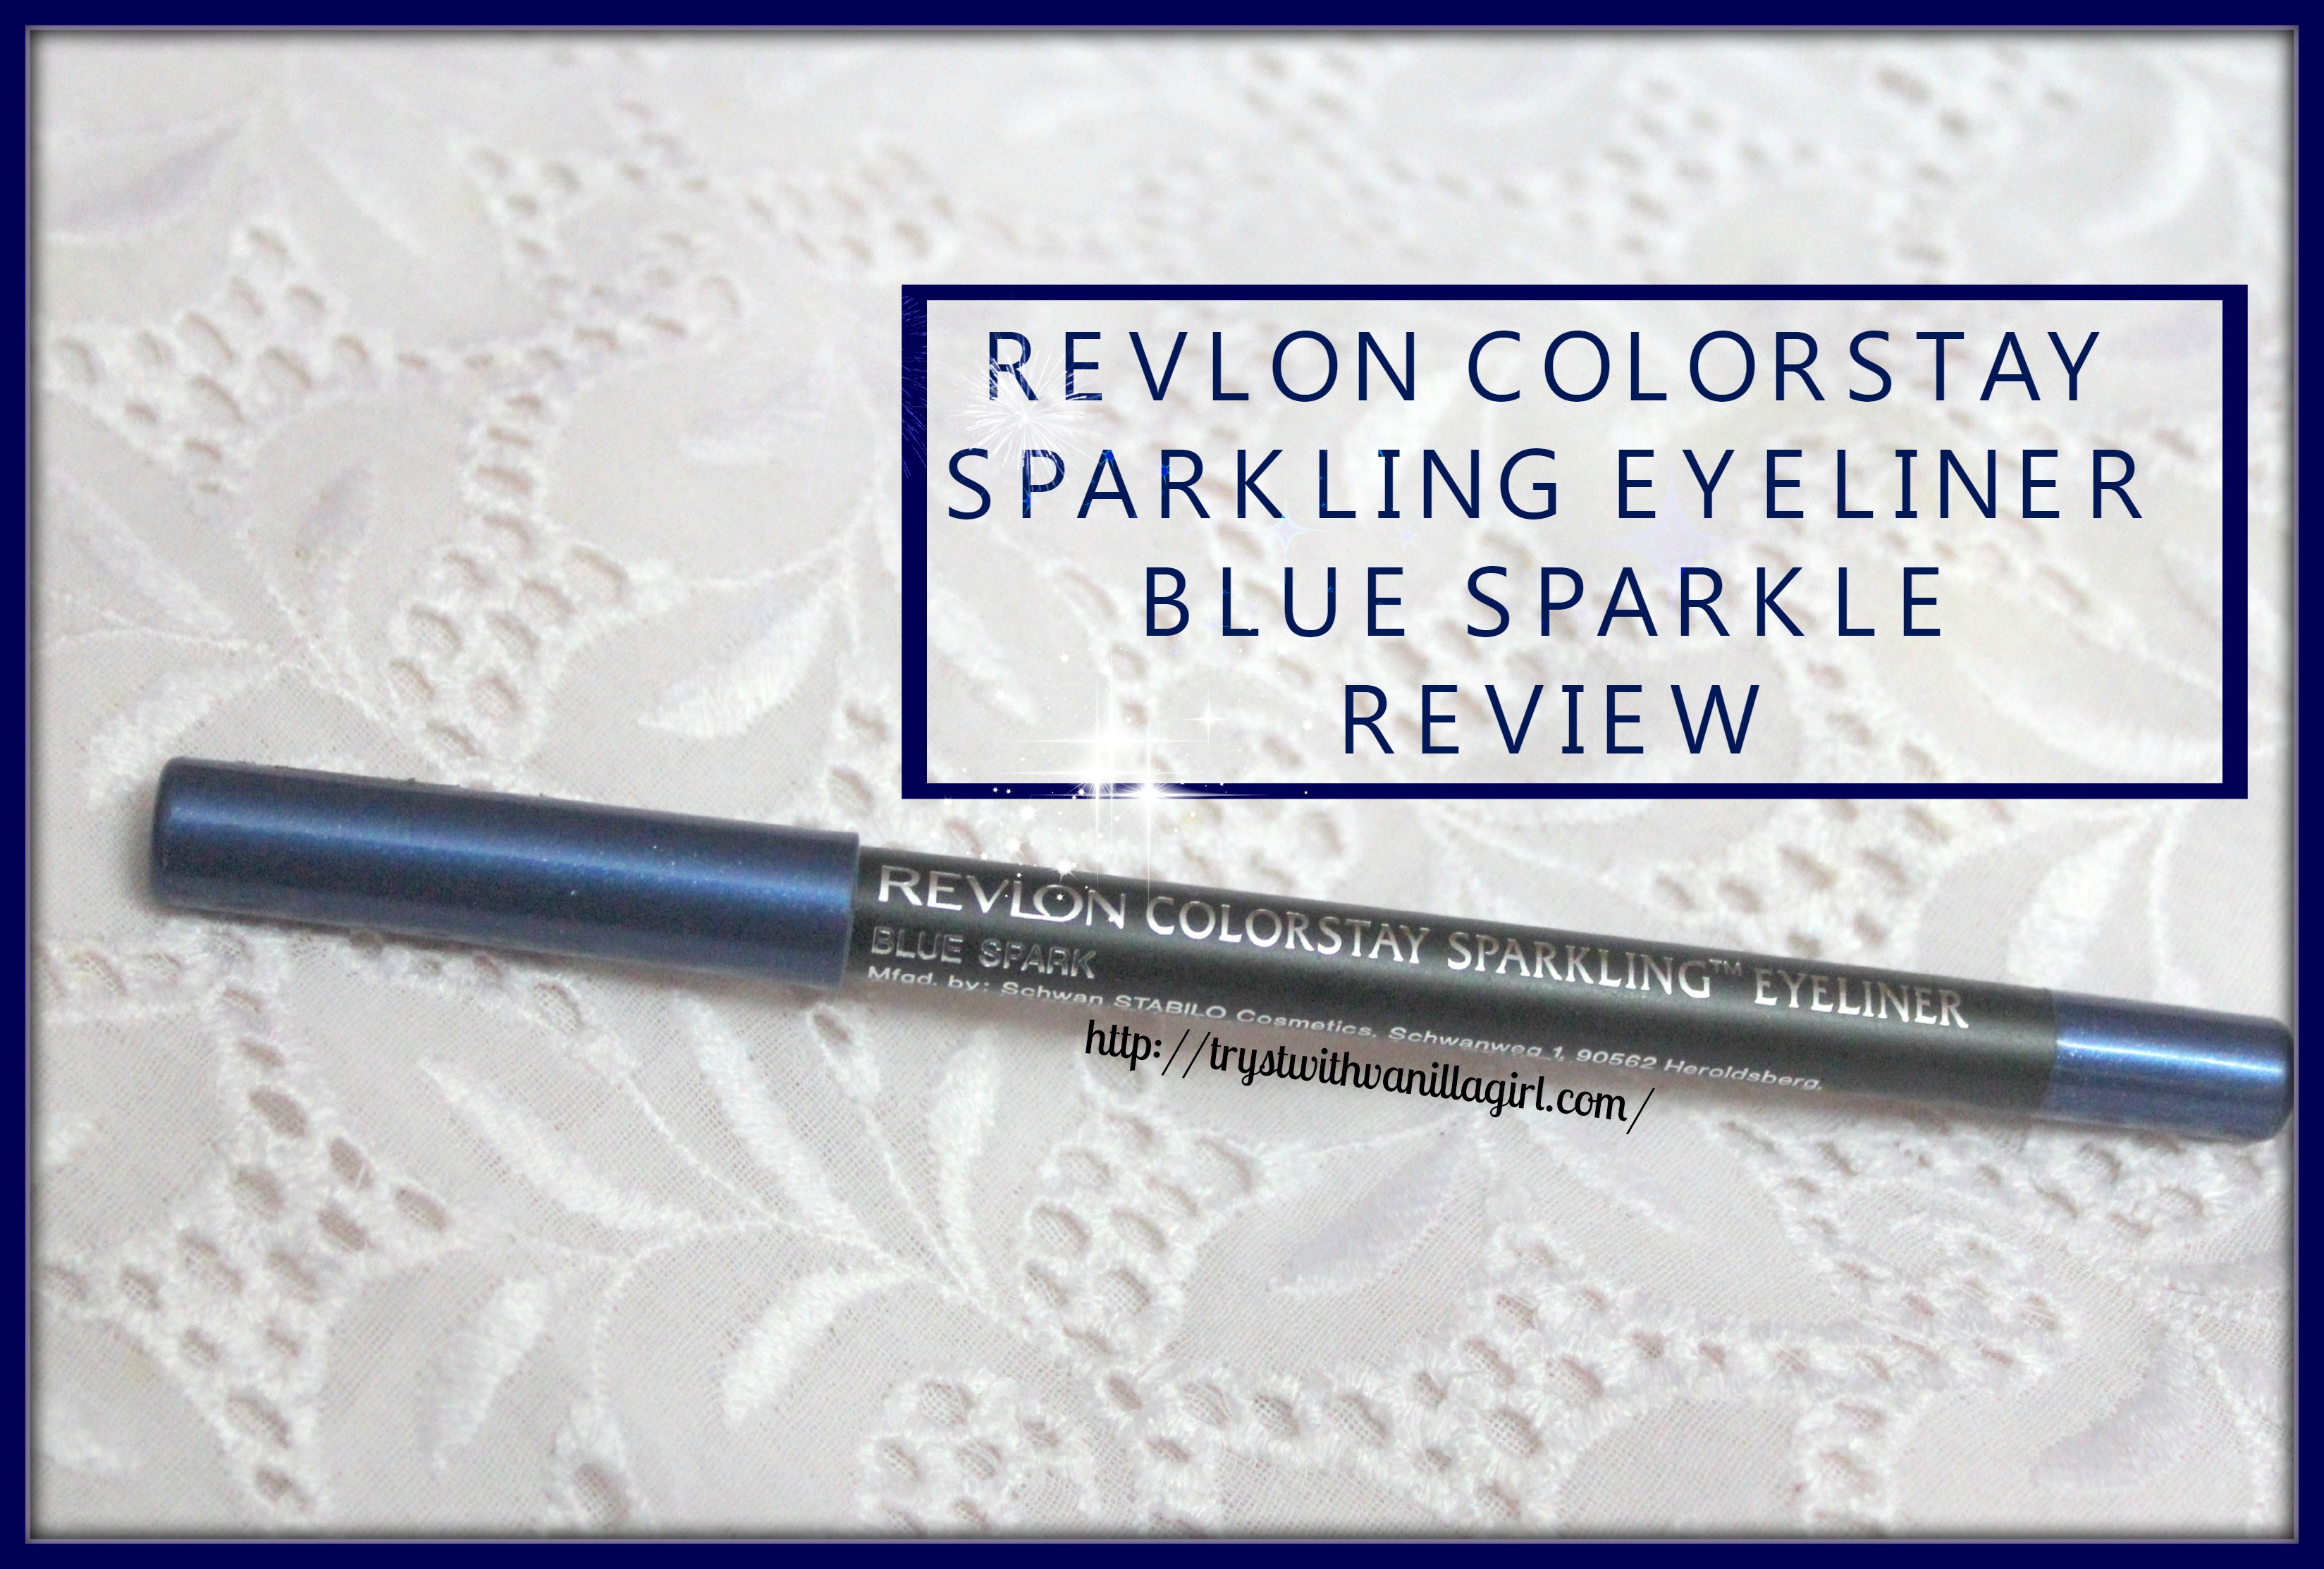 REVLON COLORSTAY SPARKLING EYELINER BLUE SPARKLE REVIEW